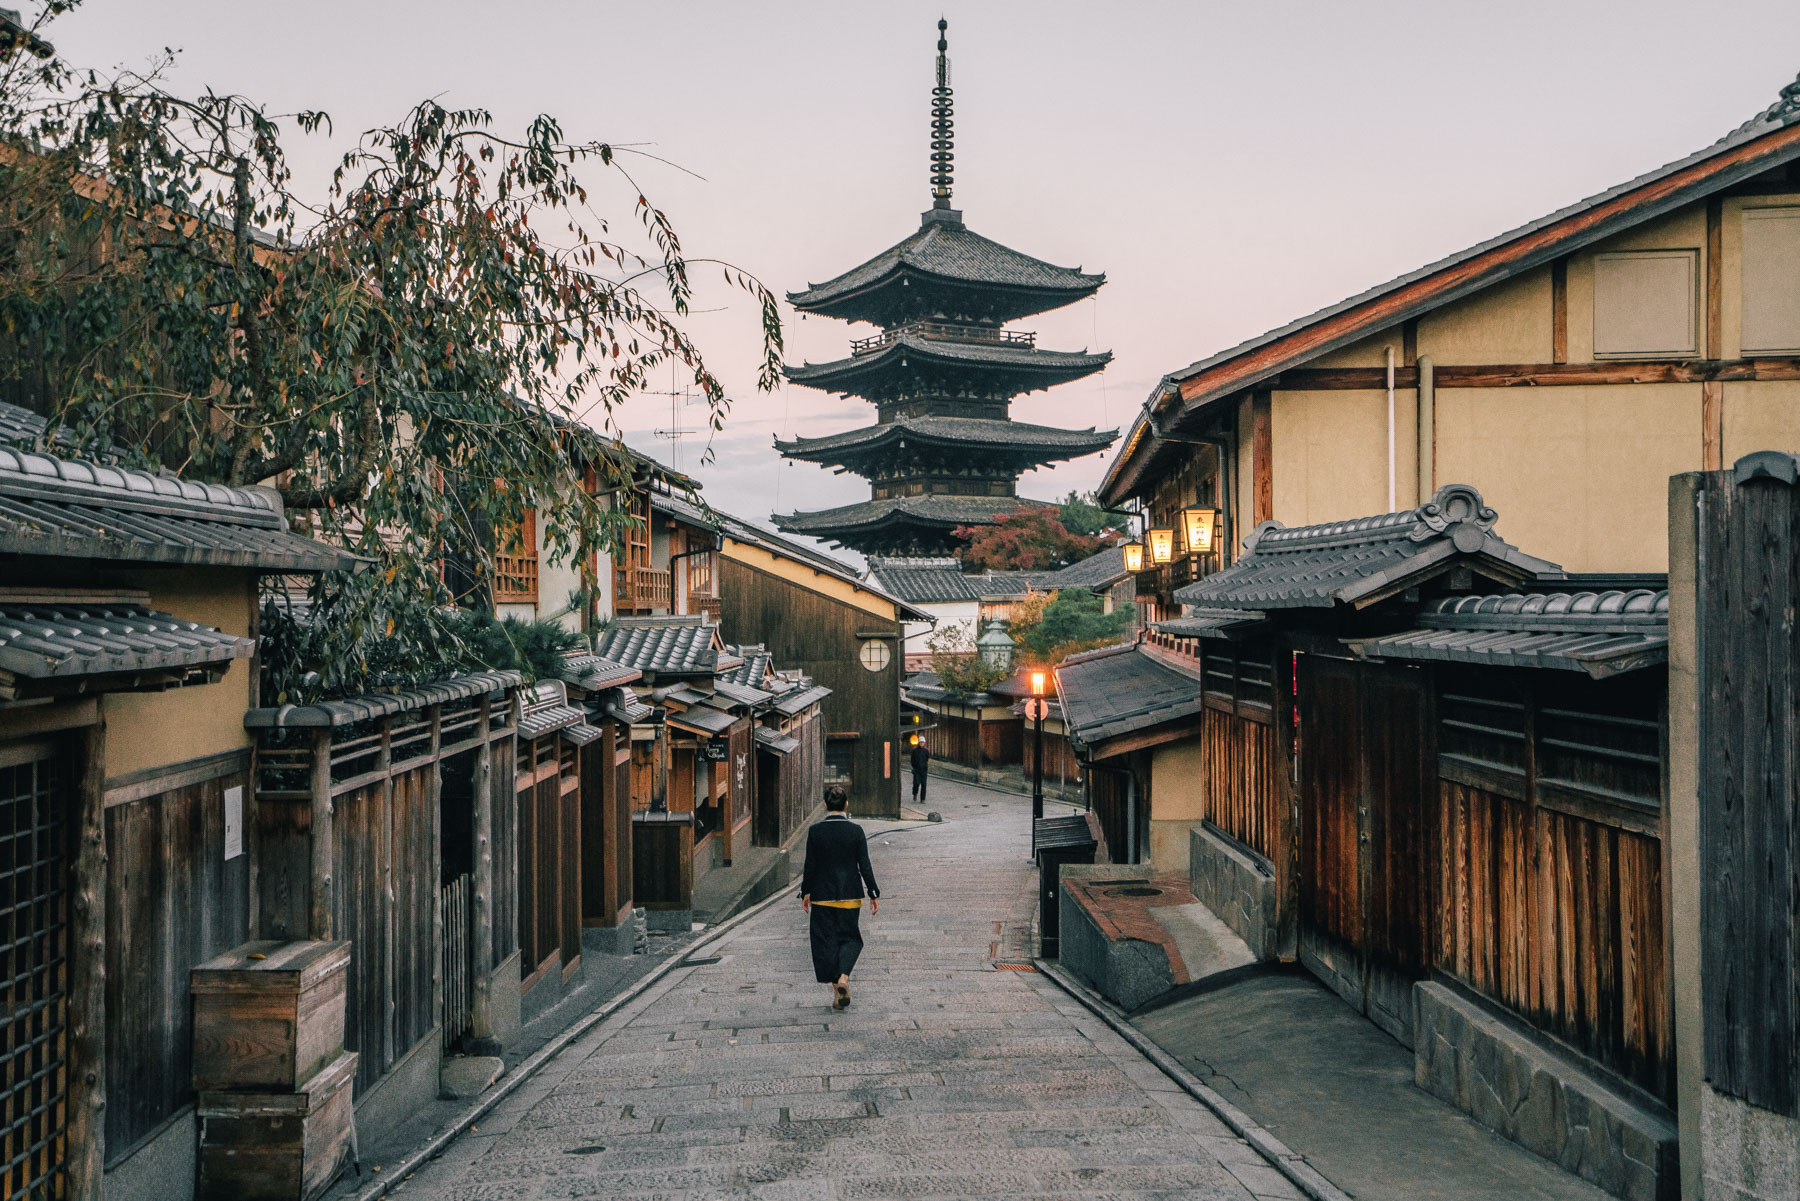 Hōkan-ji Temple in Kyoto
Best things to do Kyoto